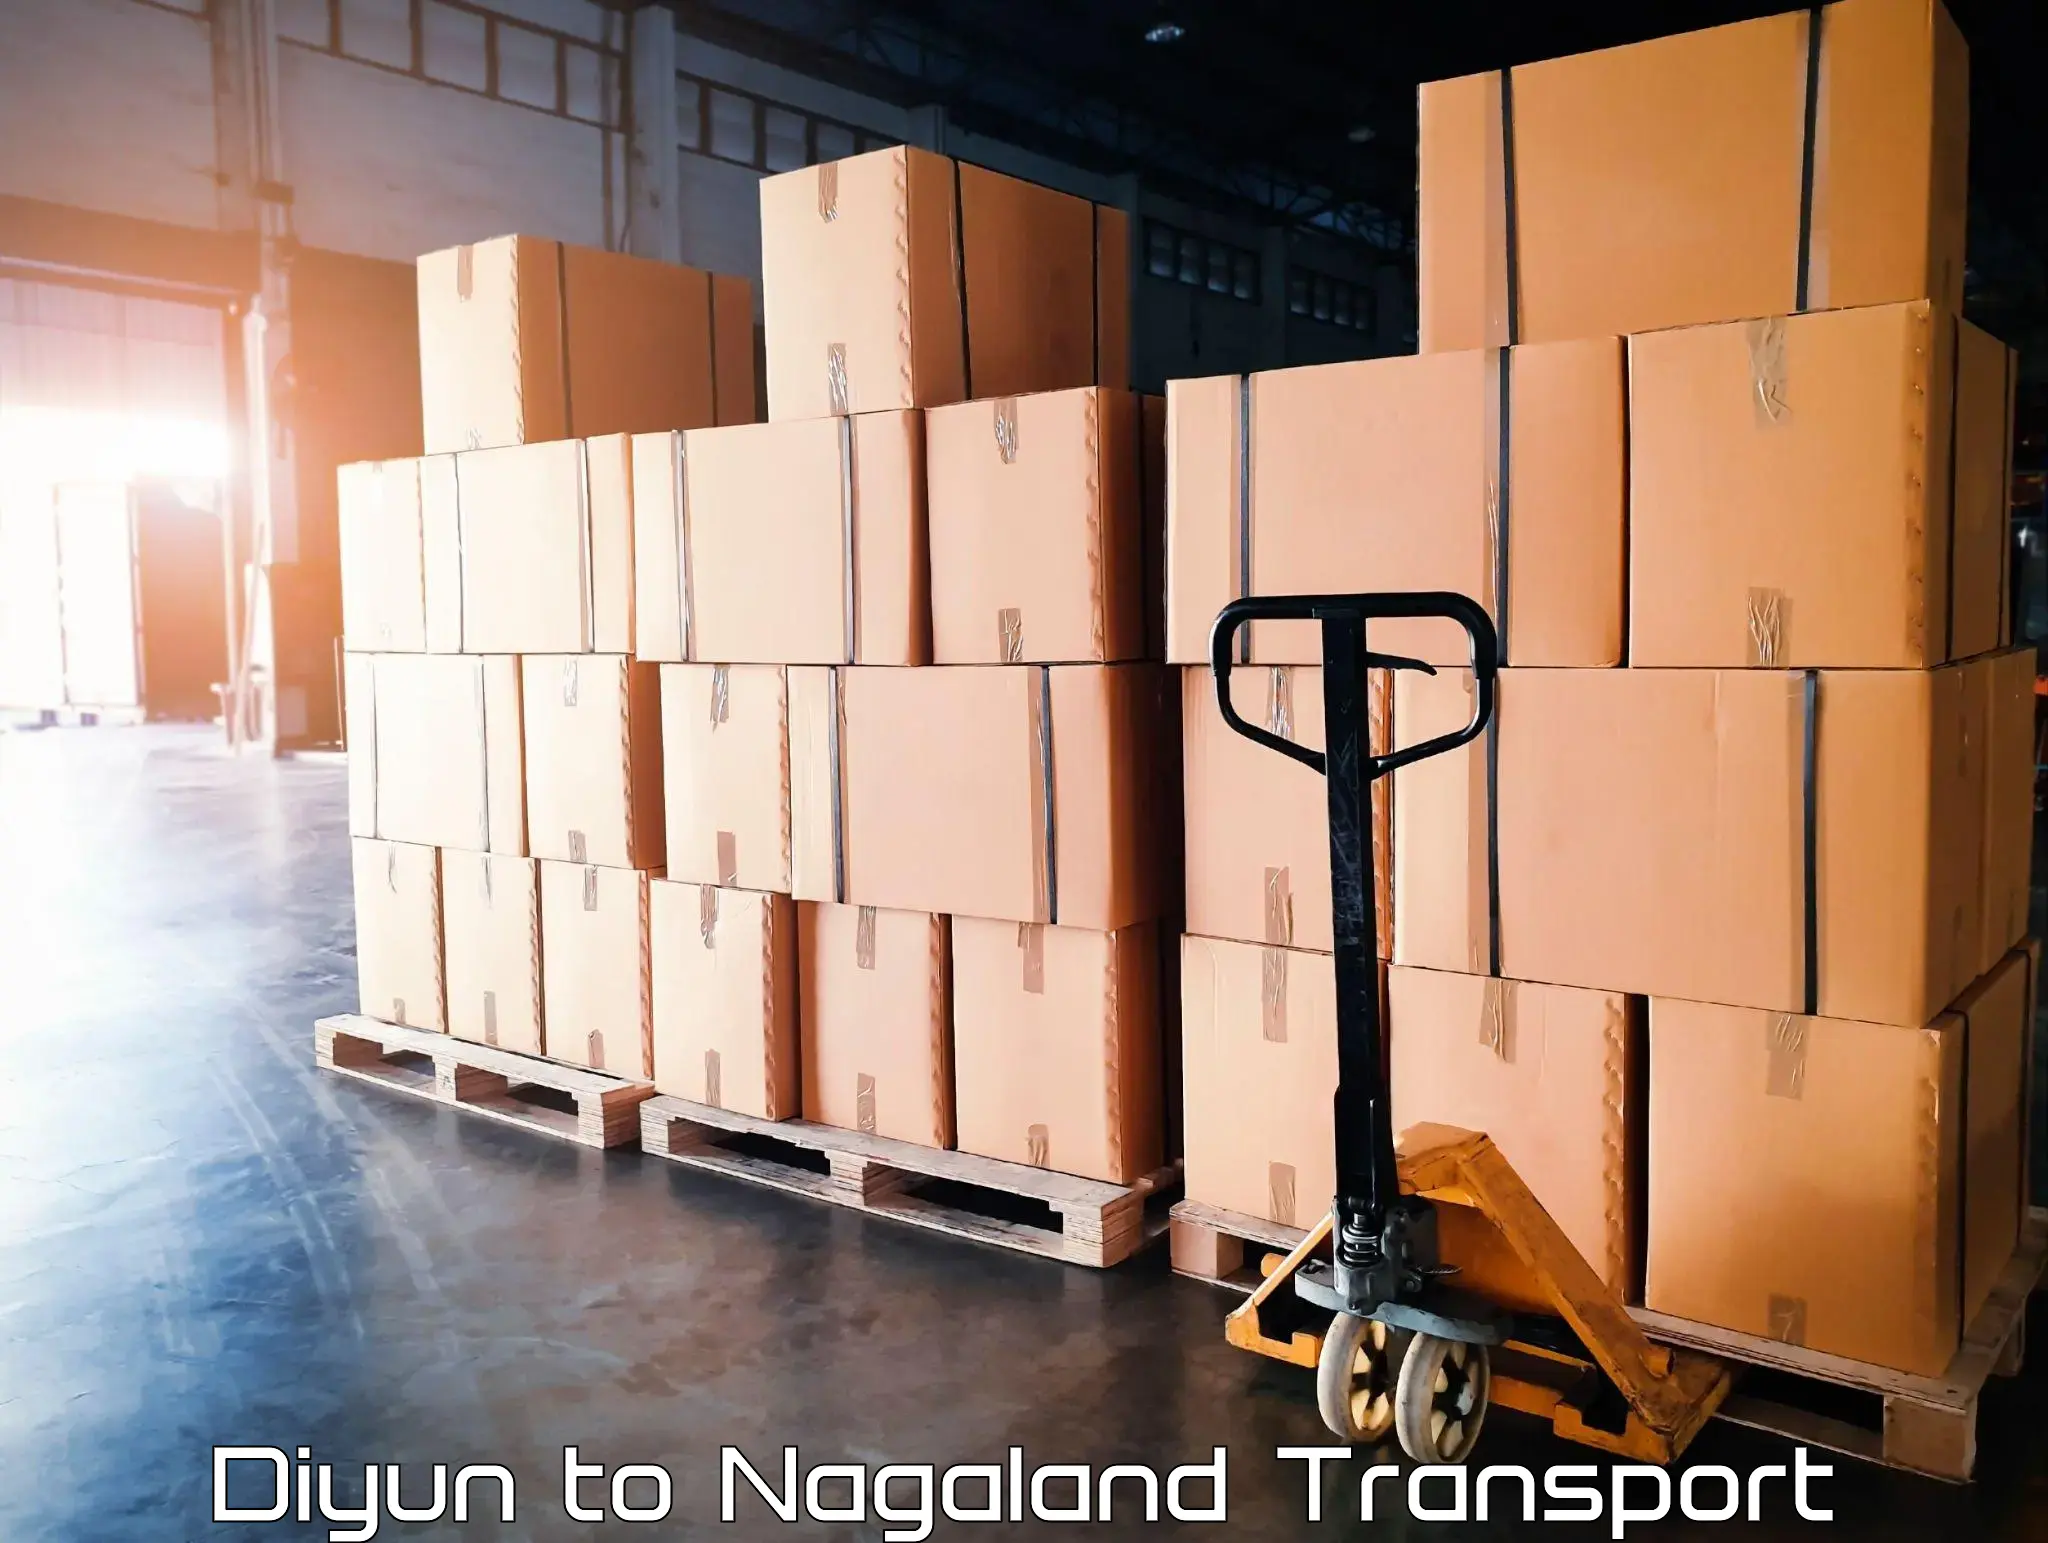 Luggage transport services Diyun to Longleng